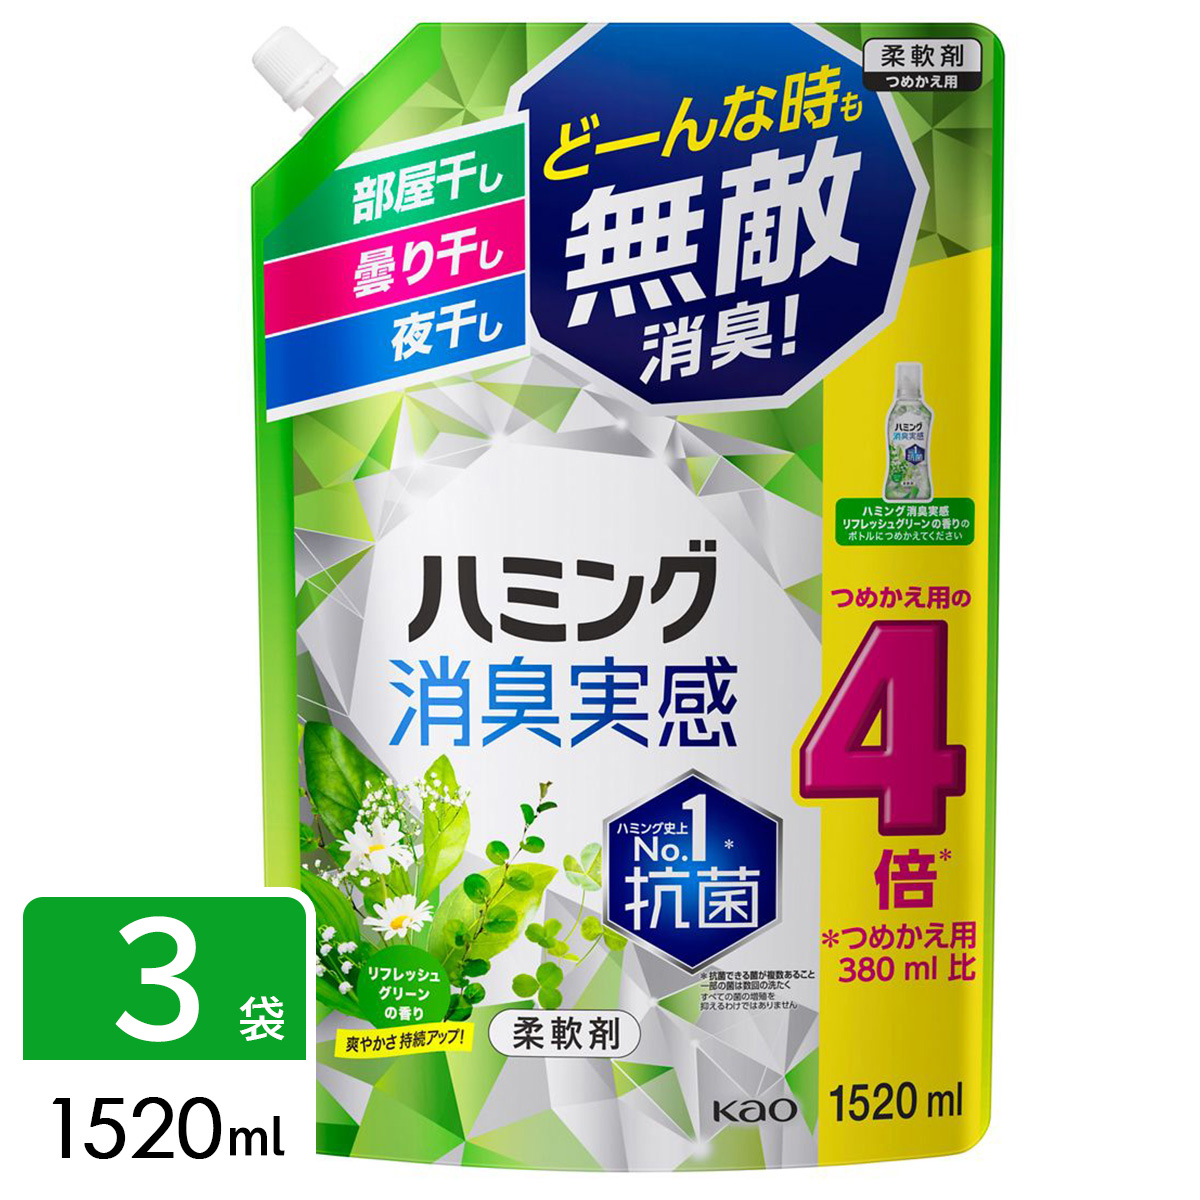 ハミング 消臭実感 柔軟剤 リフレッシュグリーンの香り 超特大 1520ml×3袋